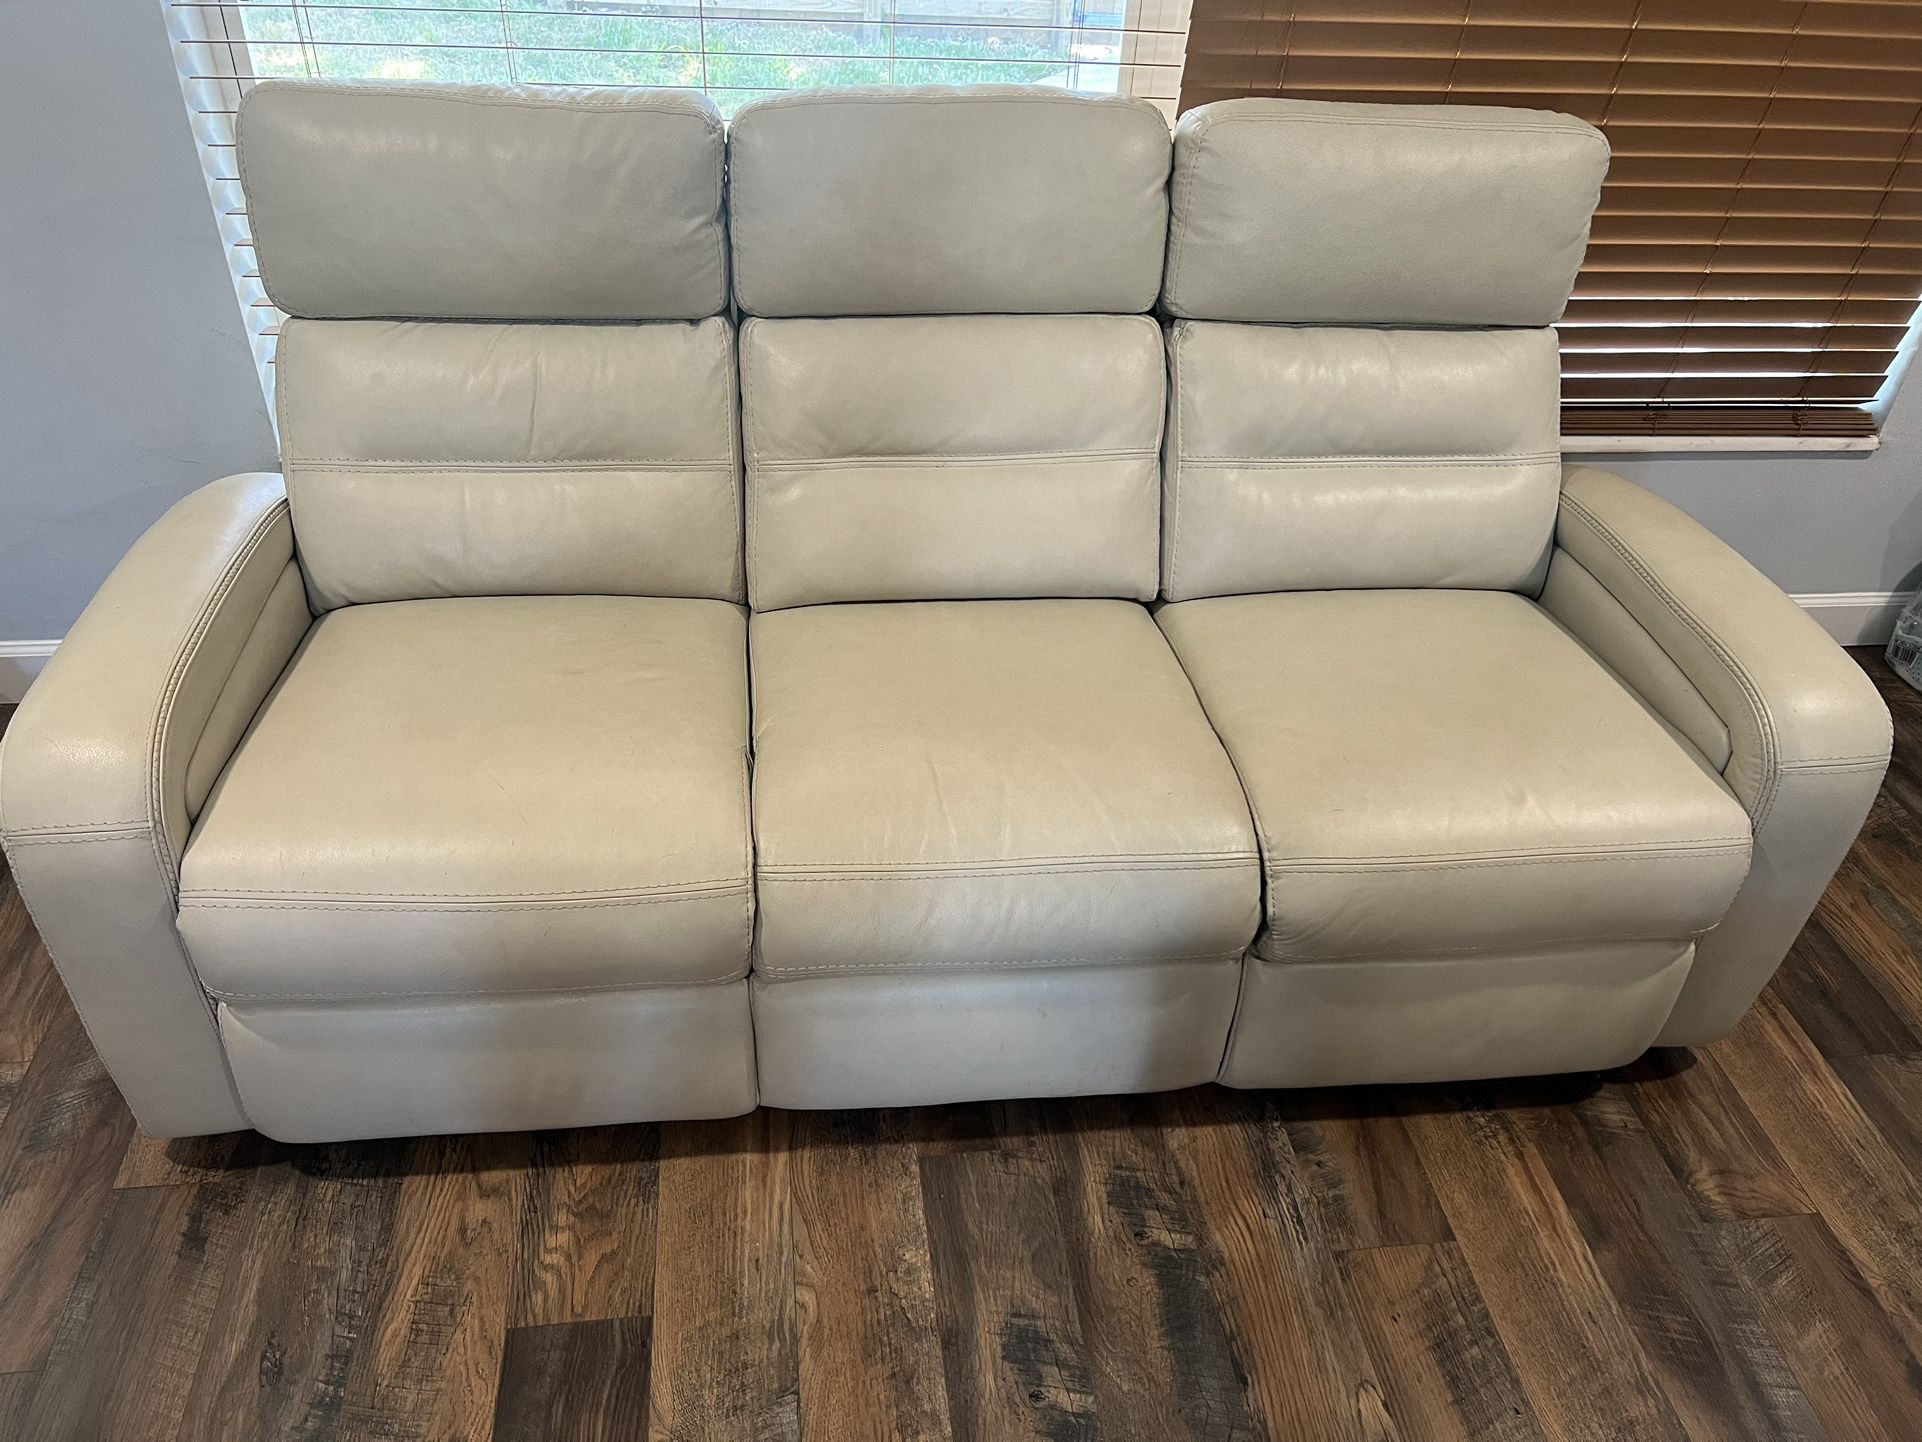 2 White Leather Sofas 